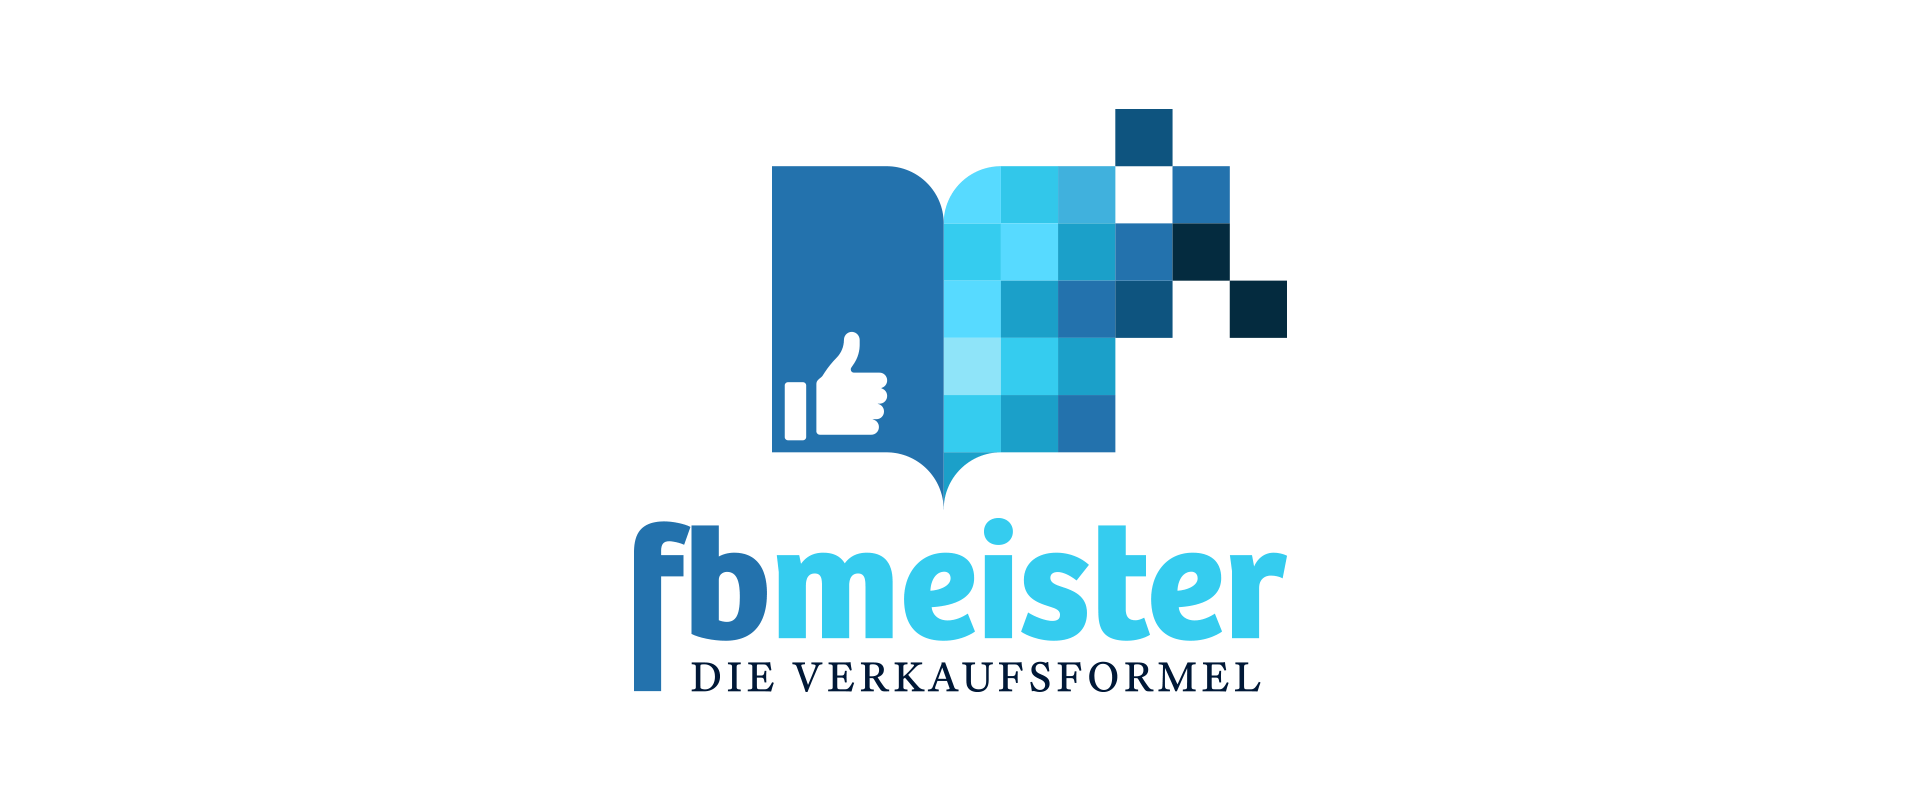 fbmeister | Die Verkaufsformel